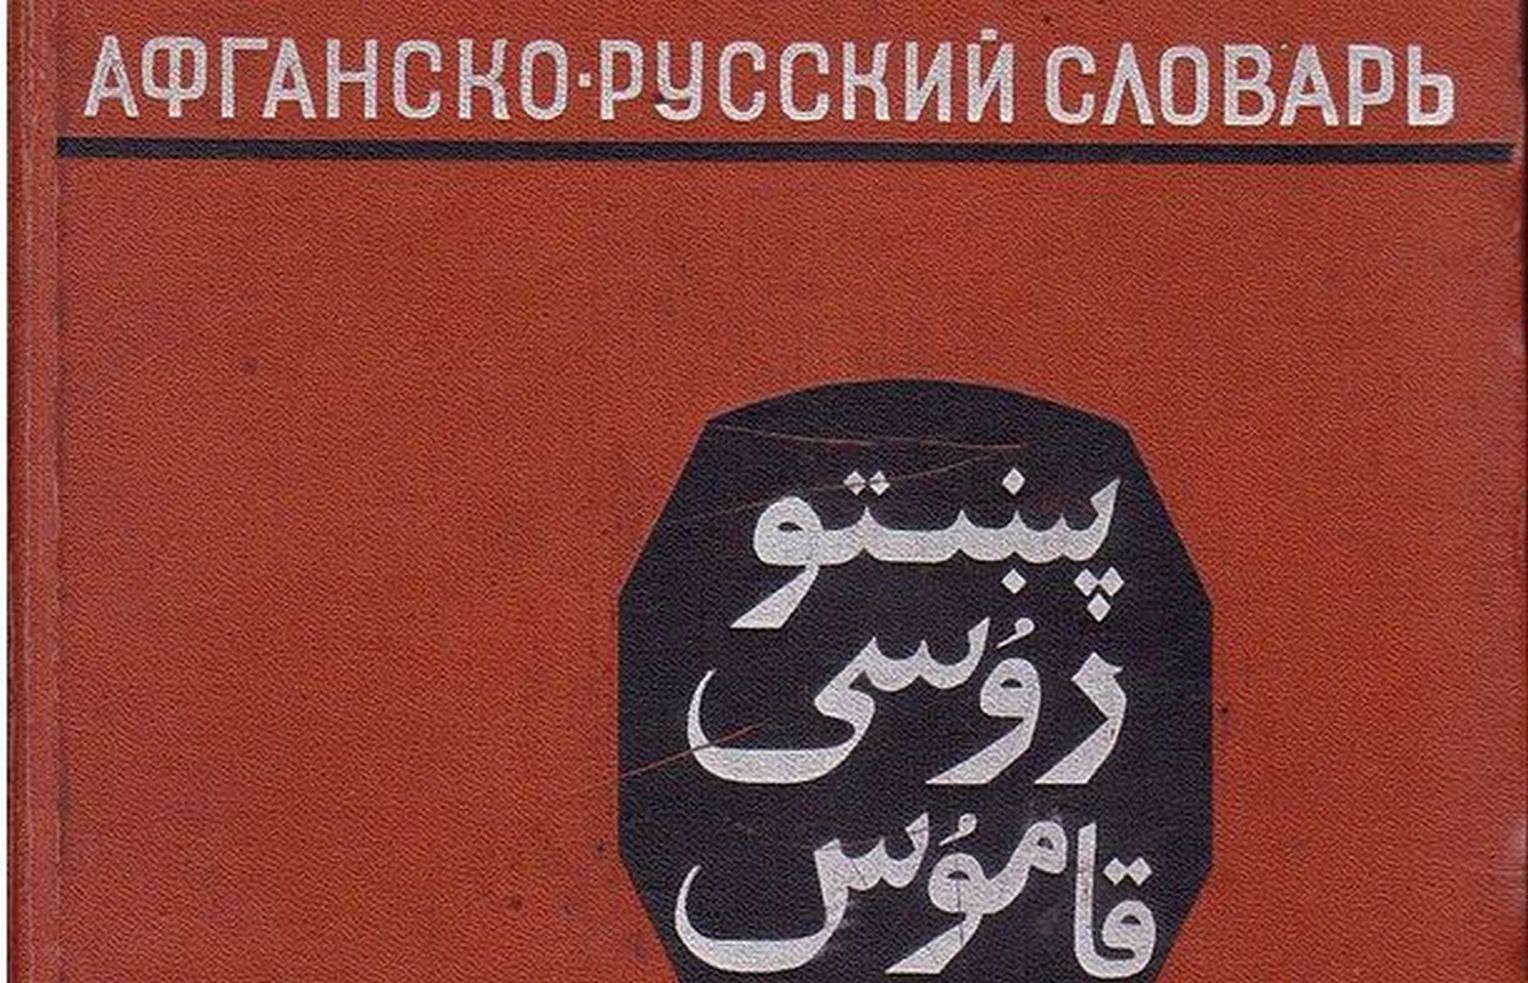 پښتو روسي قاموس - اسلانوف